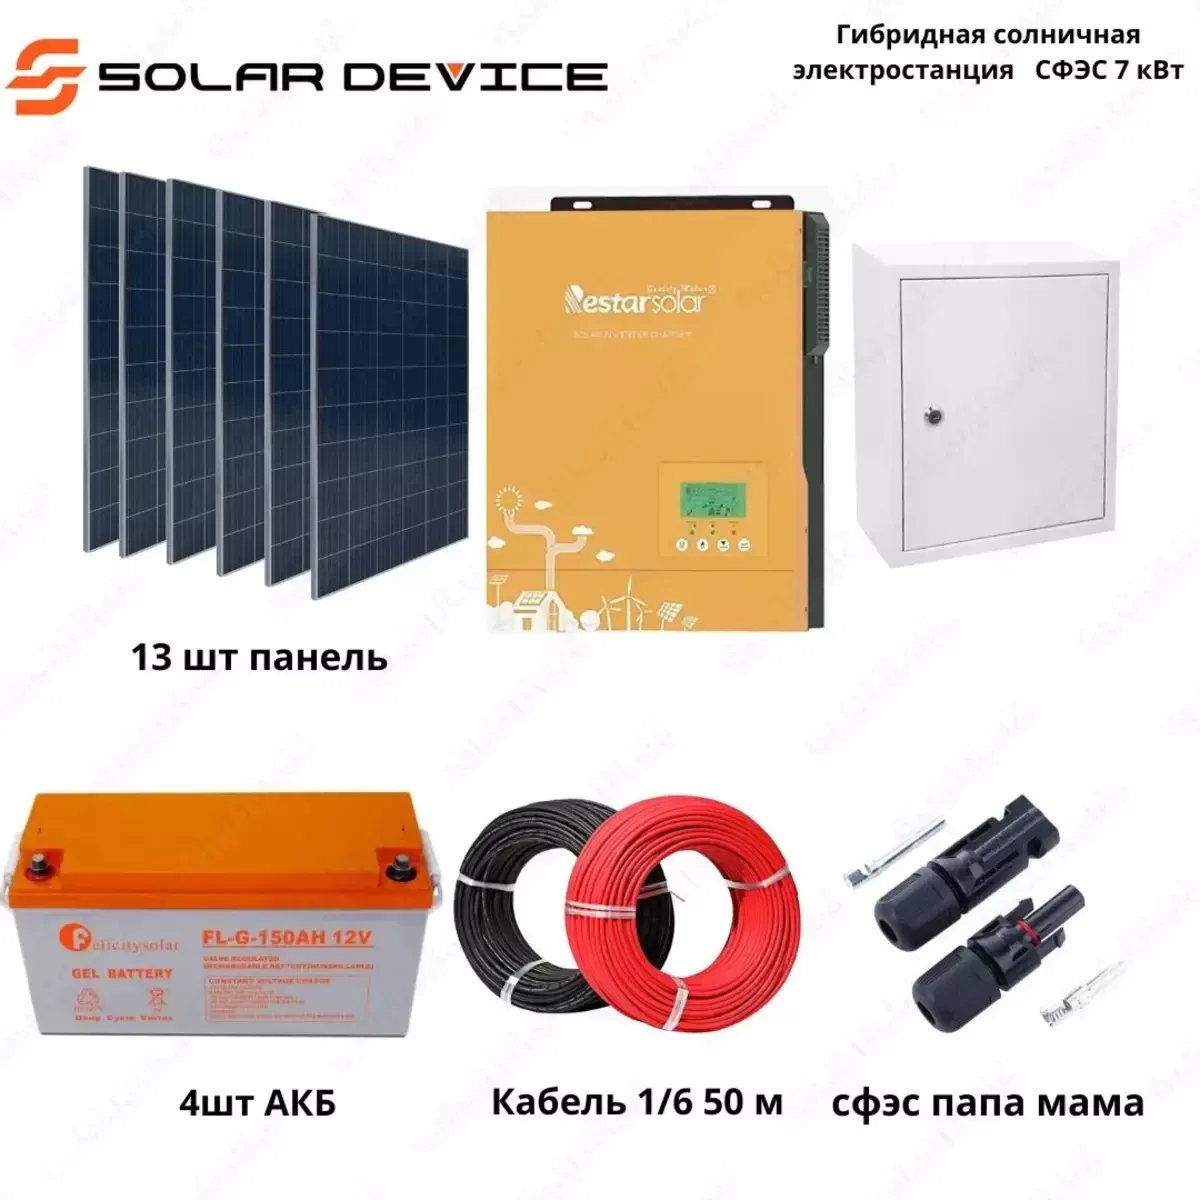 Гибридная солнечная электростанция "SOLAR" СФЭС (7 кВт)#1